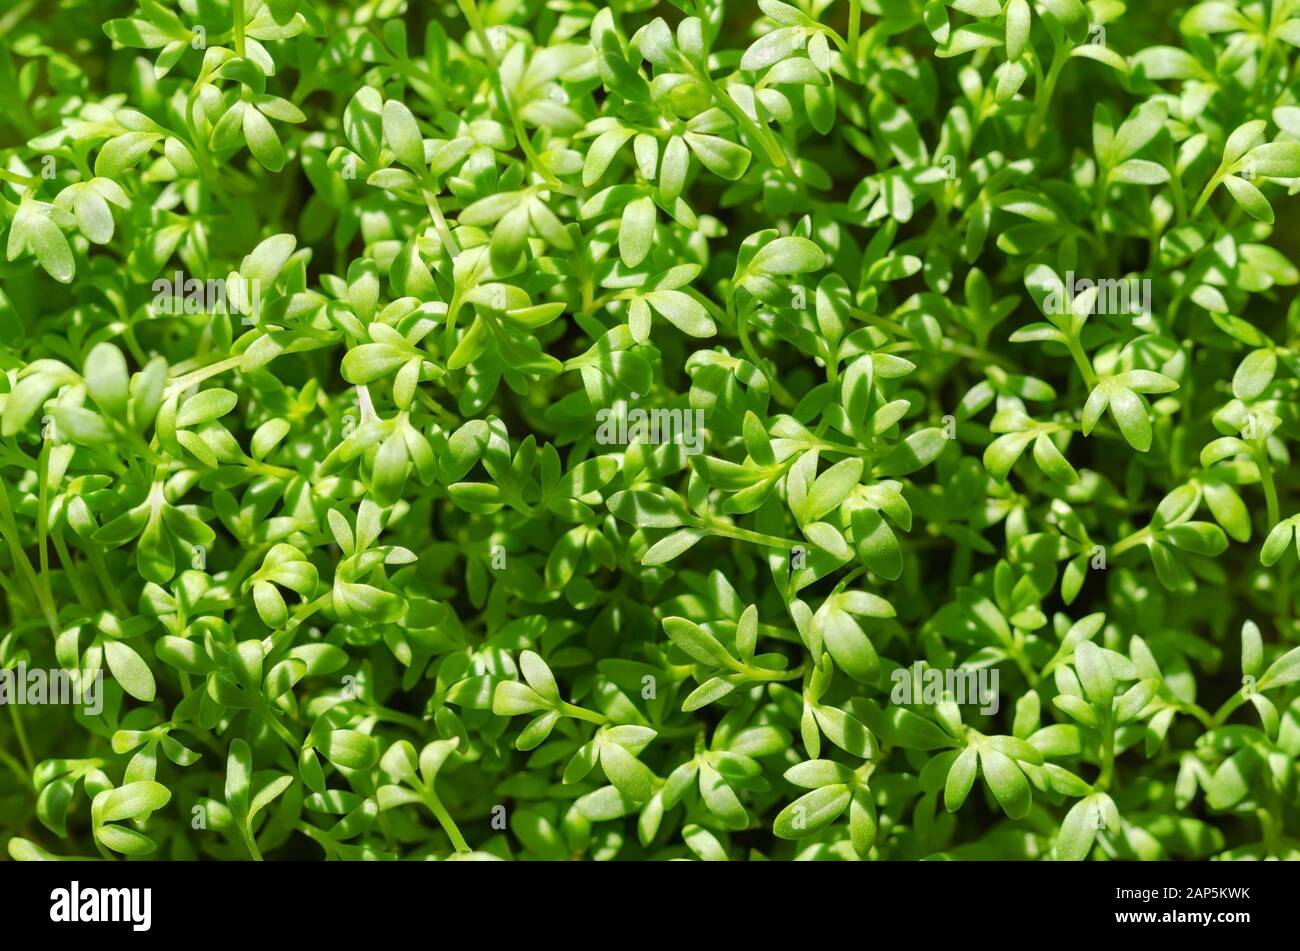 Le cresson alénois pousses d'en haut, de plus en plus du soleil. Aussi, de cresson ou pepperwort peppergrass. Lepidium sativum, une plante comestible à croissance rapide. Banque D'Images